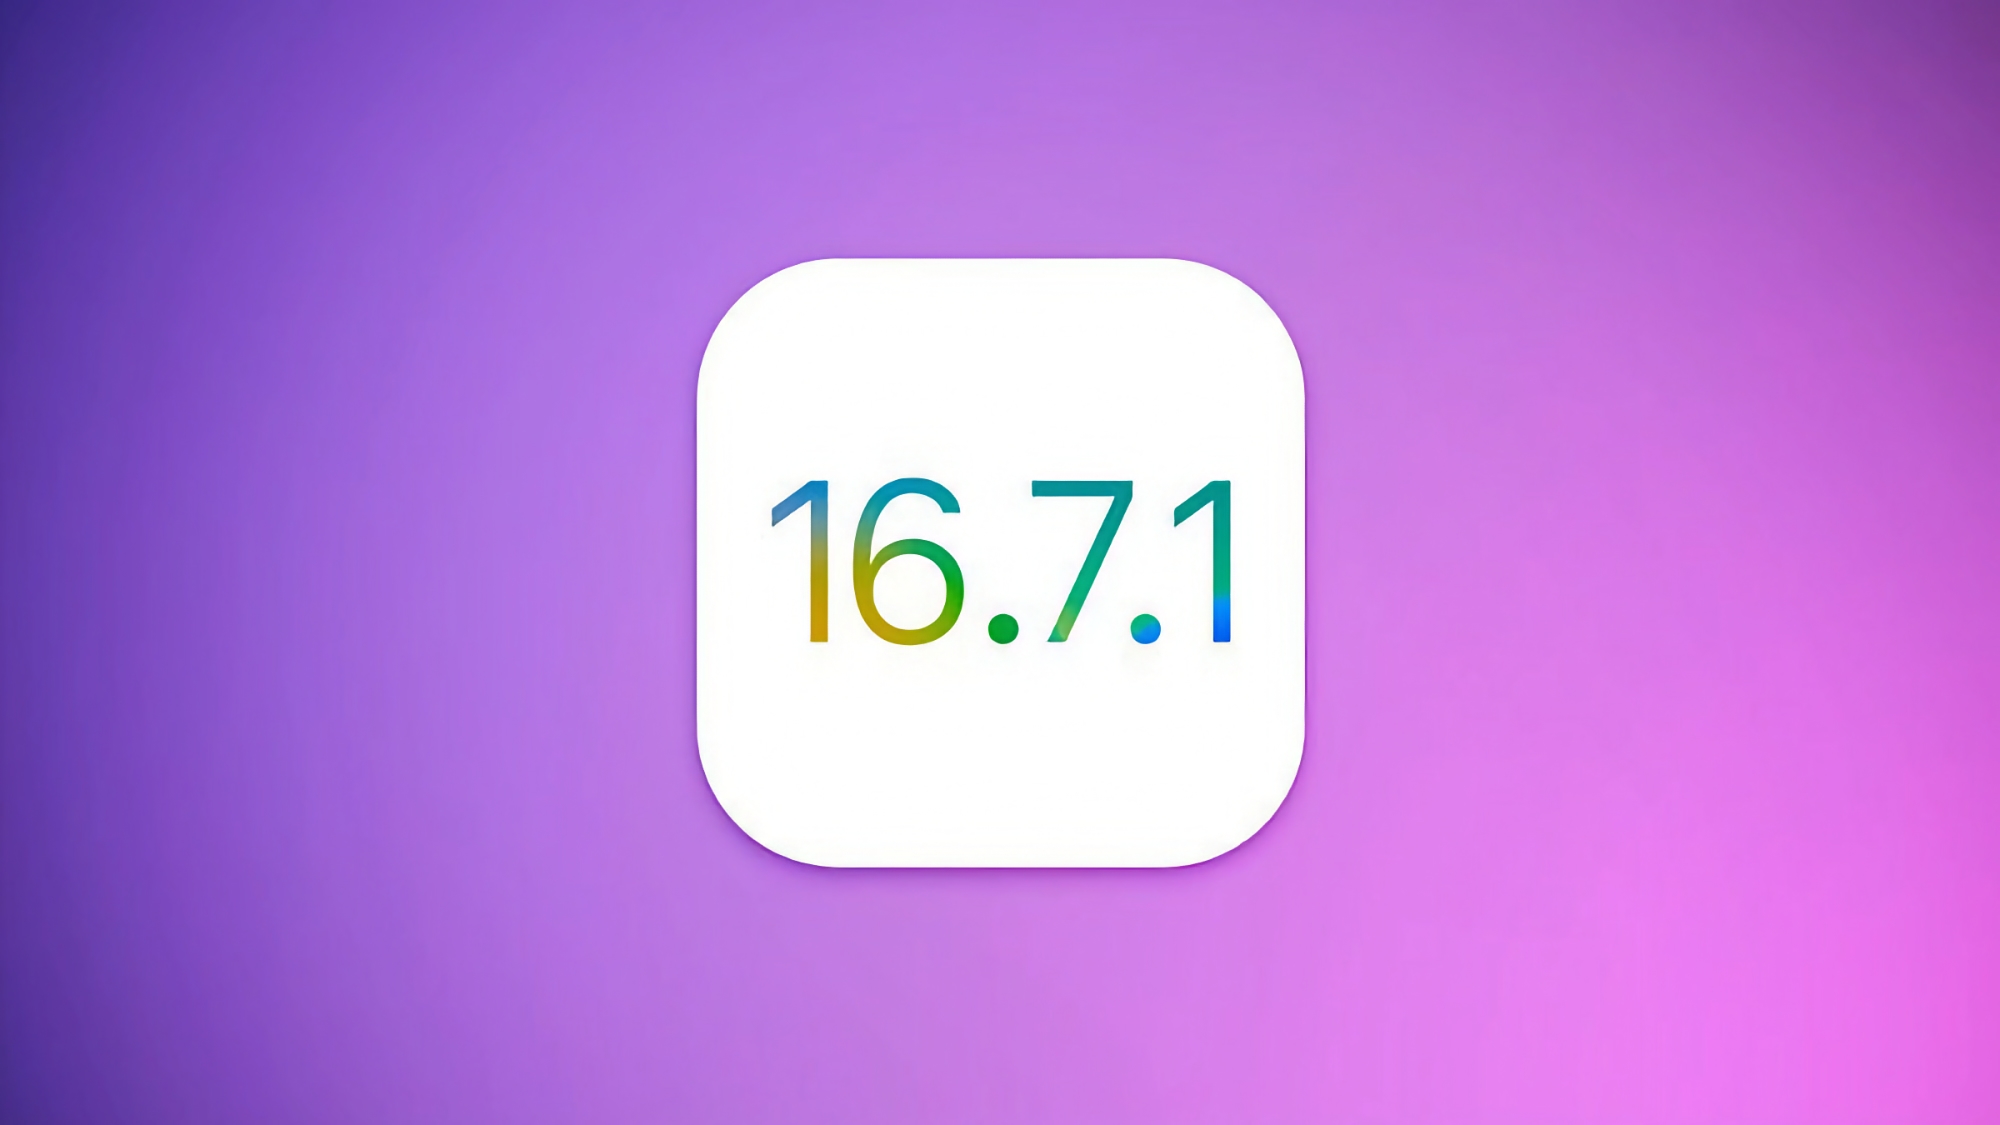 Ældre iPhone- og iPad-modeller har fået iOS 16.7.1: Hvad er nyt?